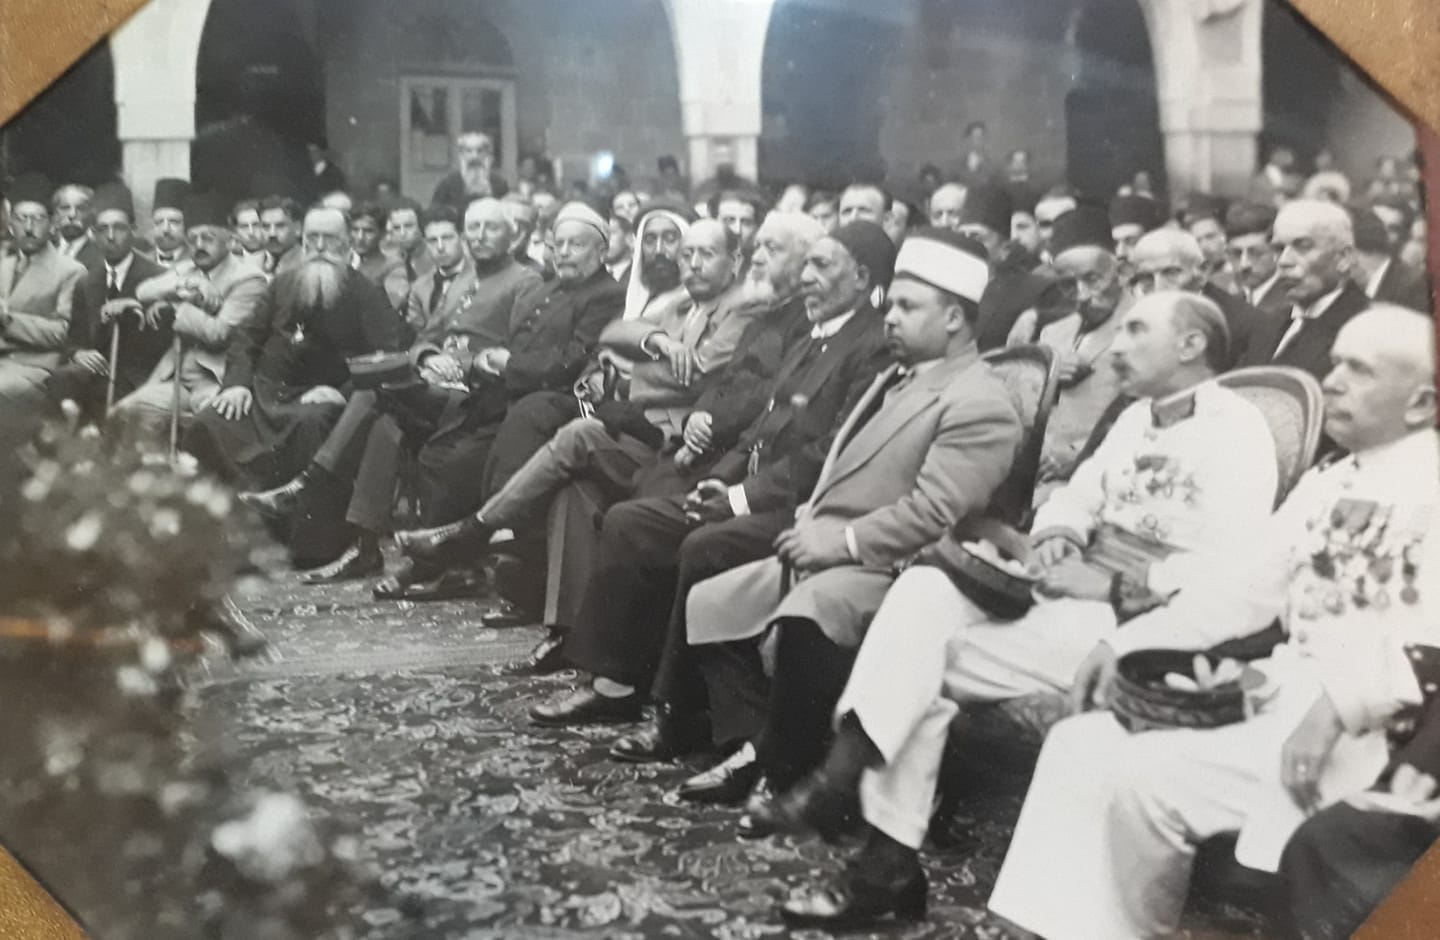 التاريخ السوري المعاصر - دمشق 1940 - الرئيس تاج الدين الحسني في مدرسة الآباء العازاريين